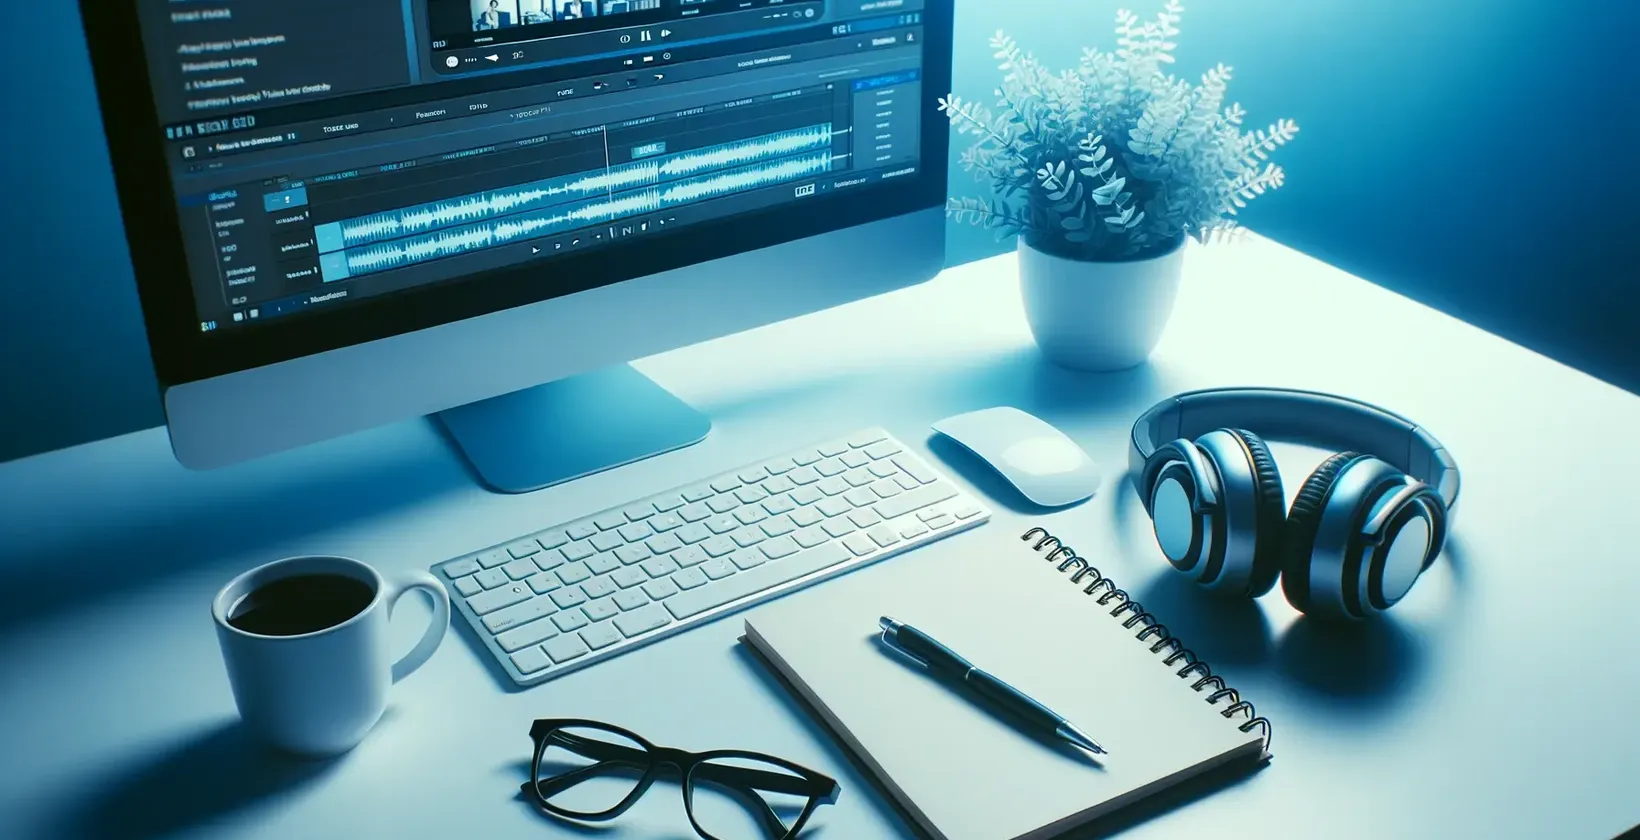 Espace de travail avec ordinateur affichant un logiciel de transcription audio, écouteurs, bloc-notes, lunettes et tasse.